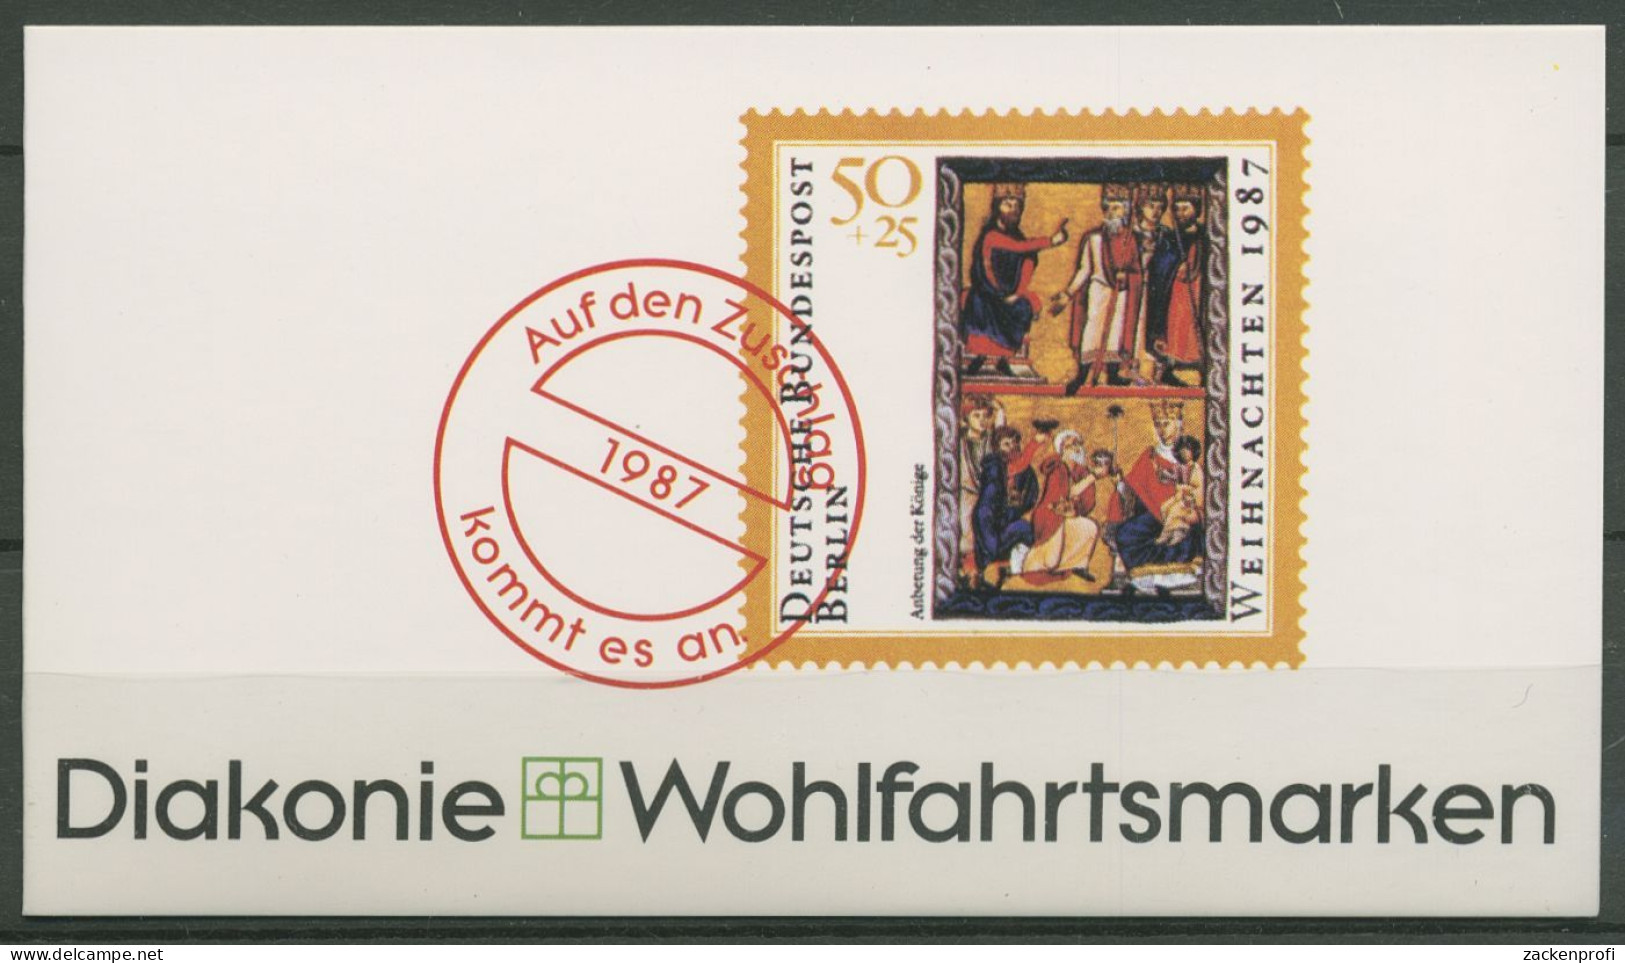 Berlin Diakonie 1987 Weihnachten Markenheftchen (797) MH W 4 Postfrisch (C60280) - Markenheftchen